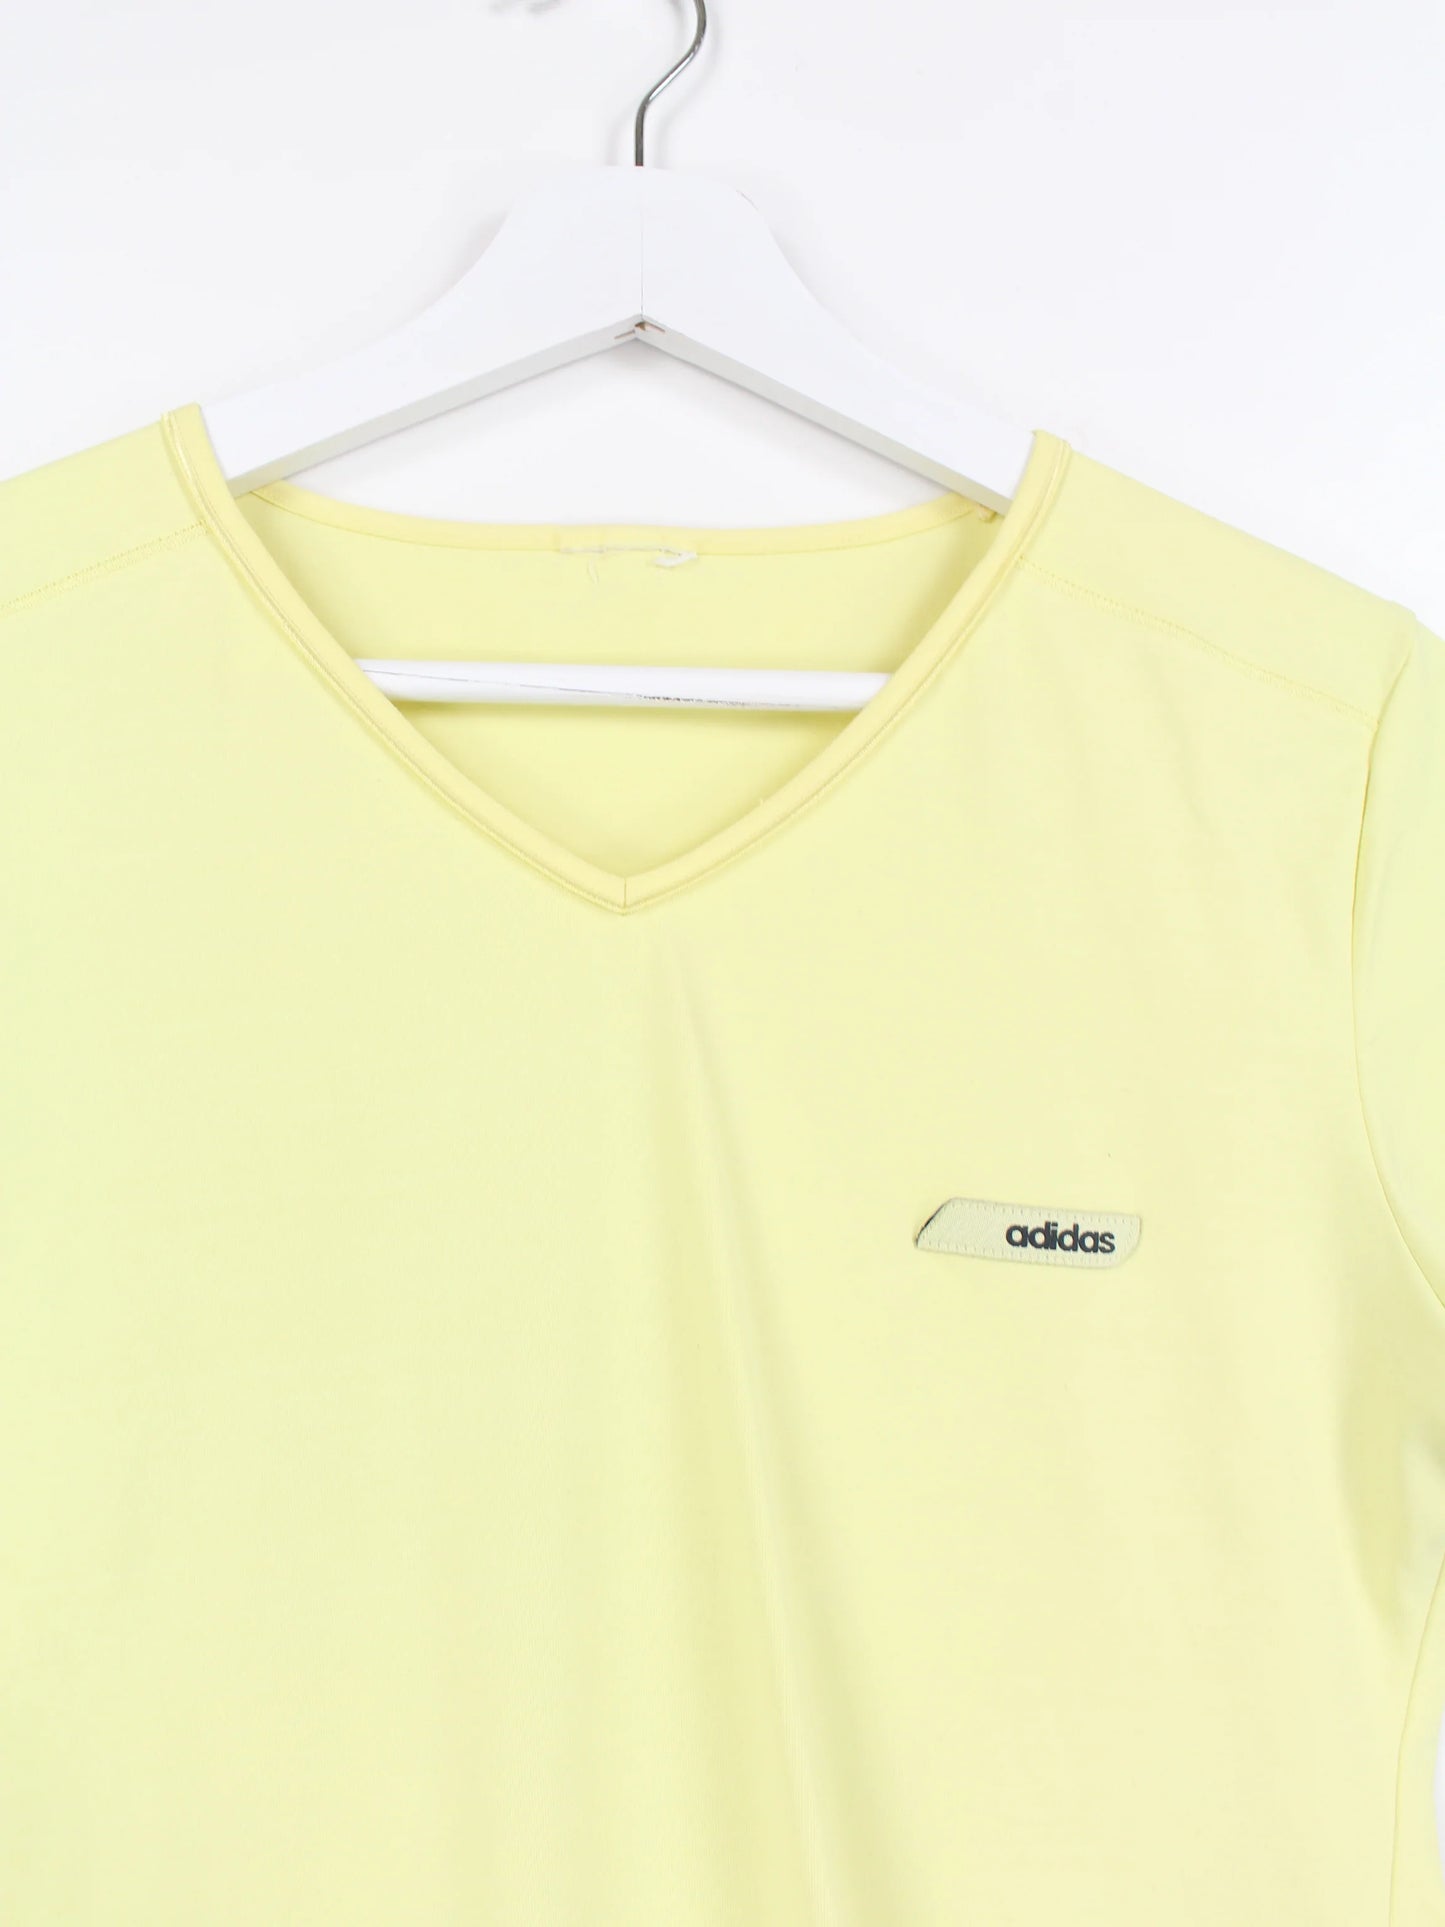 Adidas Damen Sport T-Shirt Gelb S